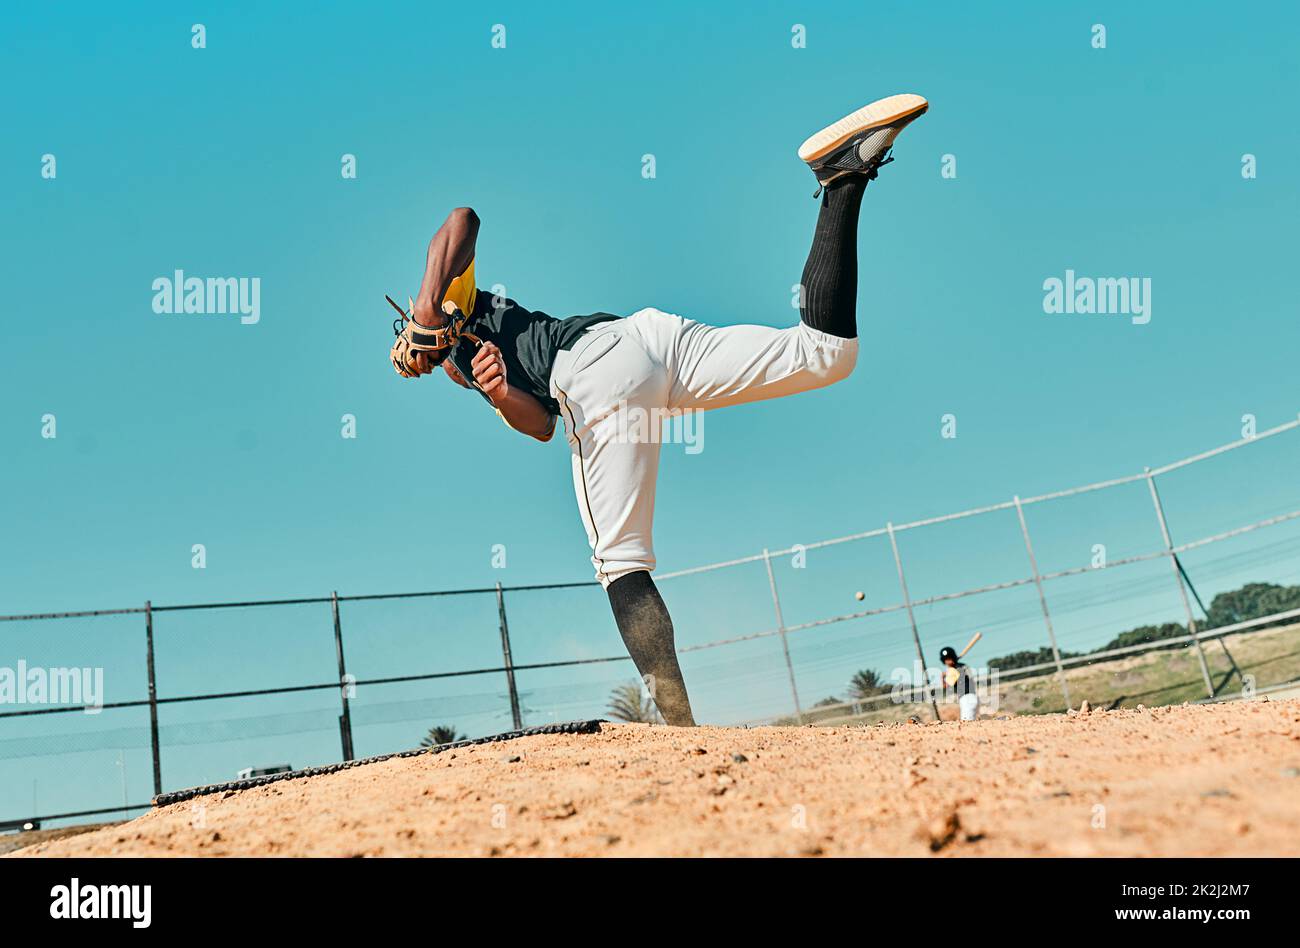 Todo lo que se necesita es todo lo que tienes. Tiro de un joven jugador de béisbol lanzando la pelota durante un juego al aire libre. Foto de stock